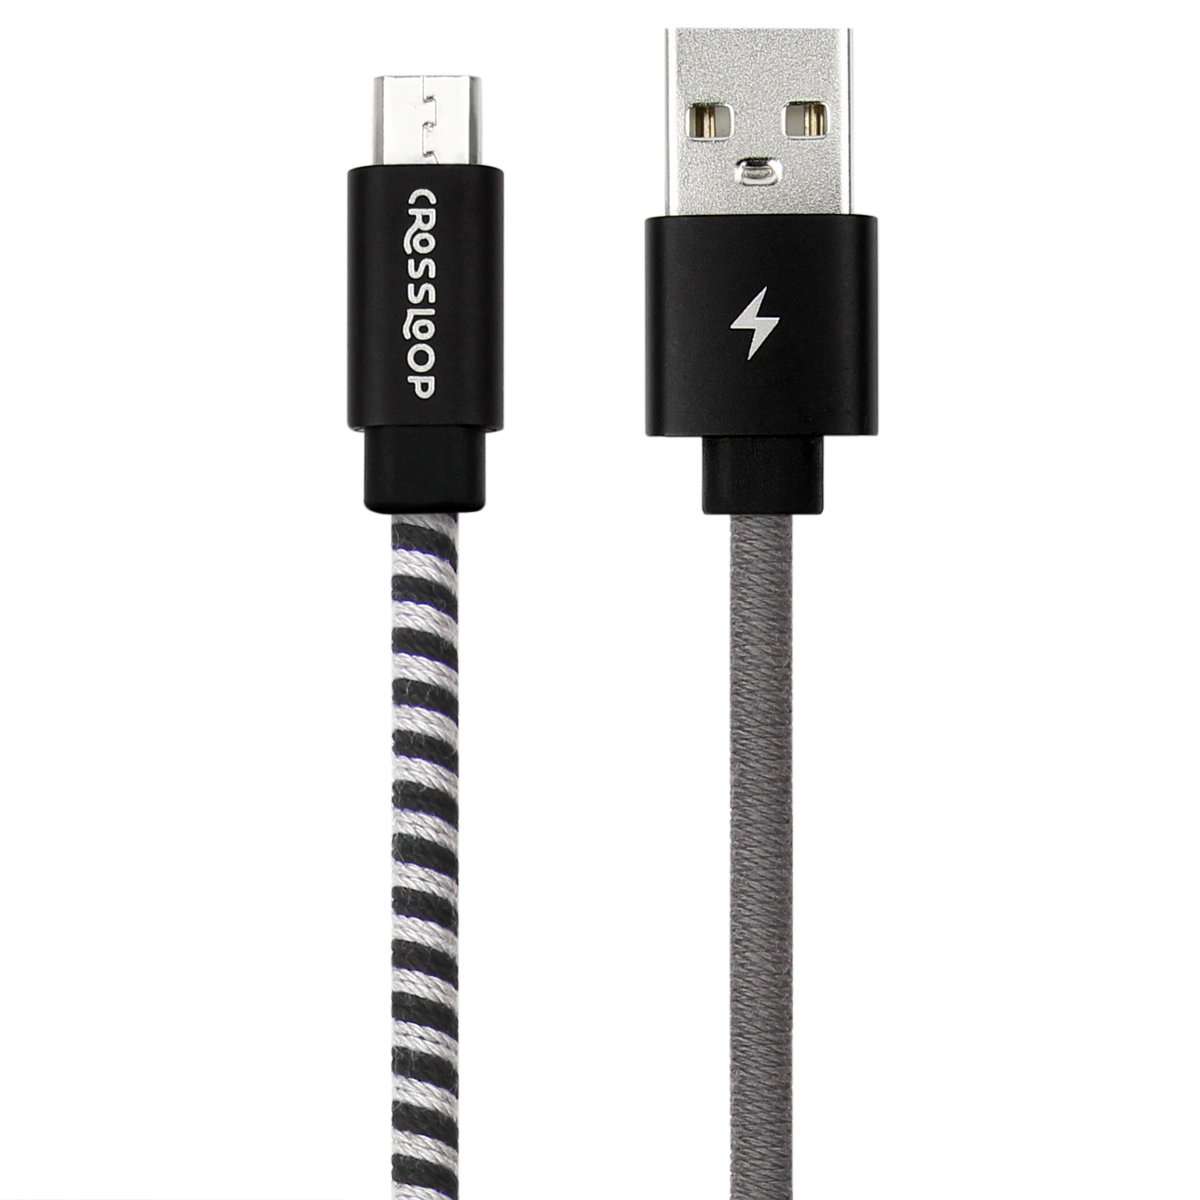 Buy Crossloop Micro USB Fast Charging Designer Cable in Black & Grey